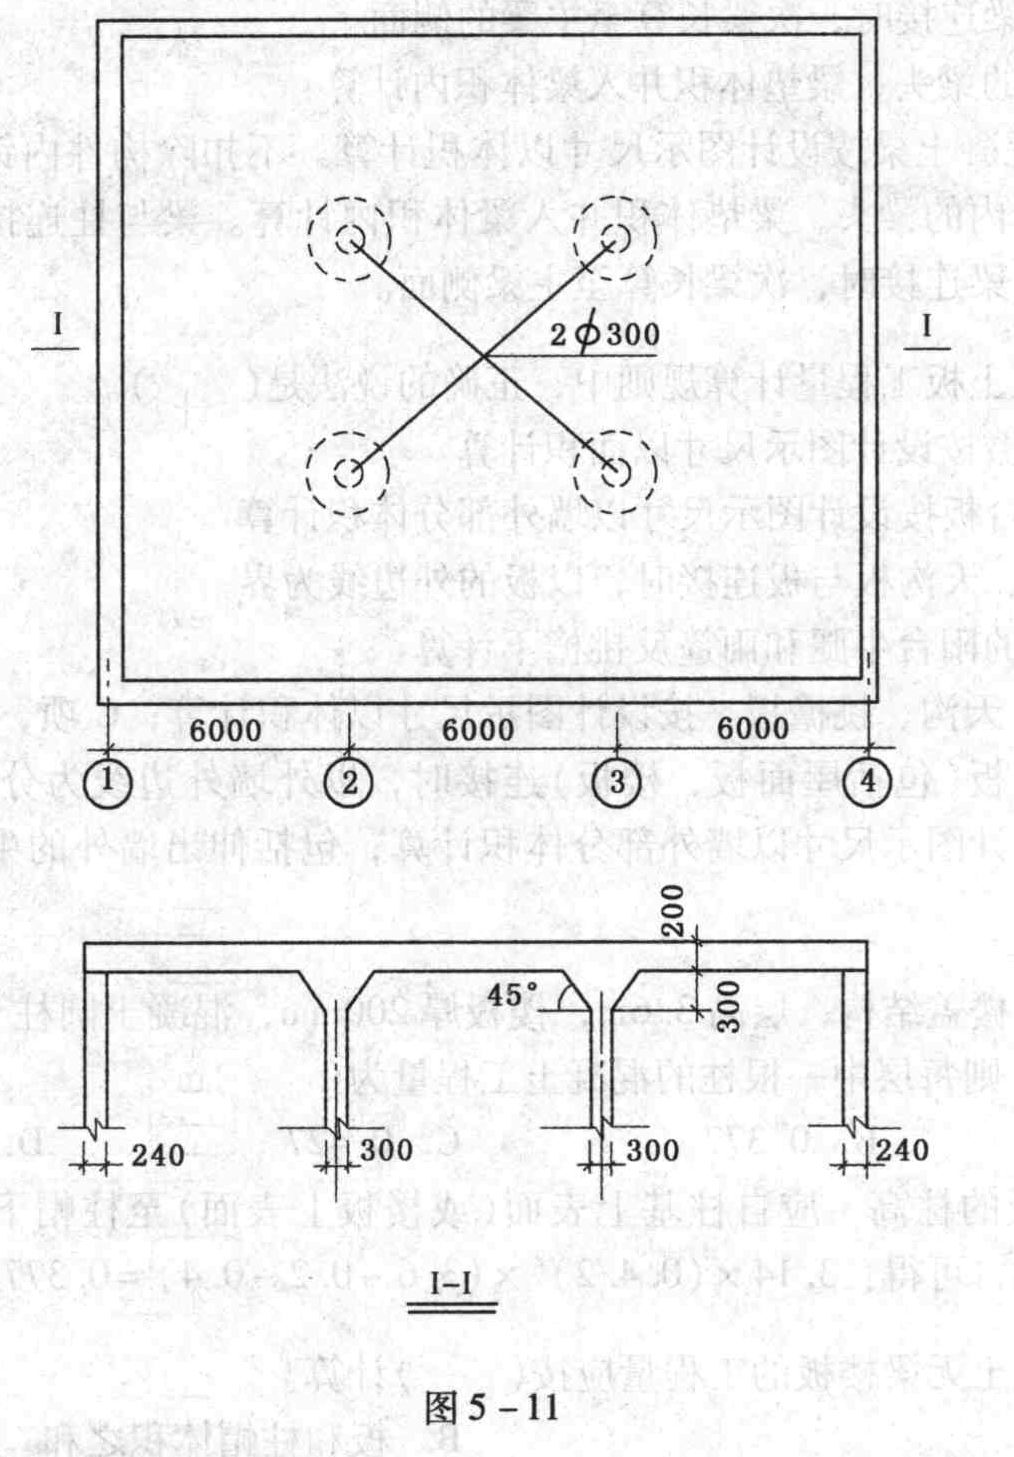 有一无梁楼盖如图5-11所示,其一层楼板加柱帽的混凝土工程量为()立方米。